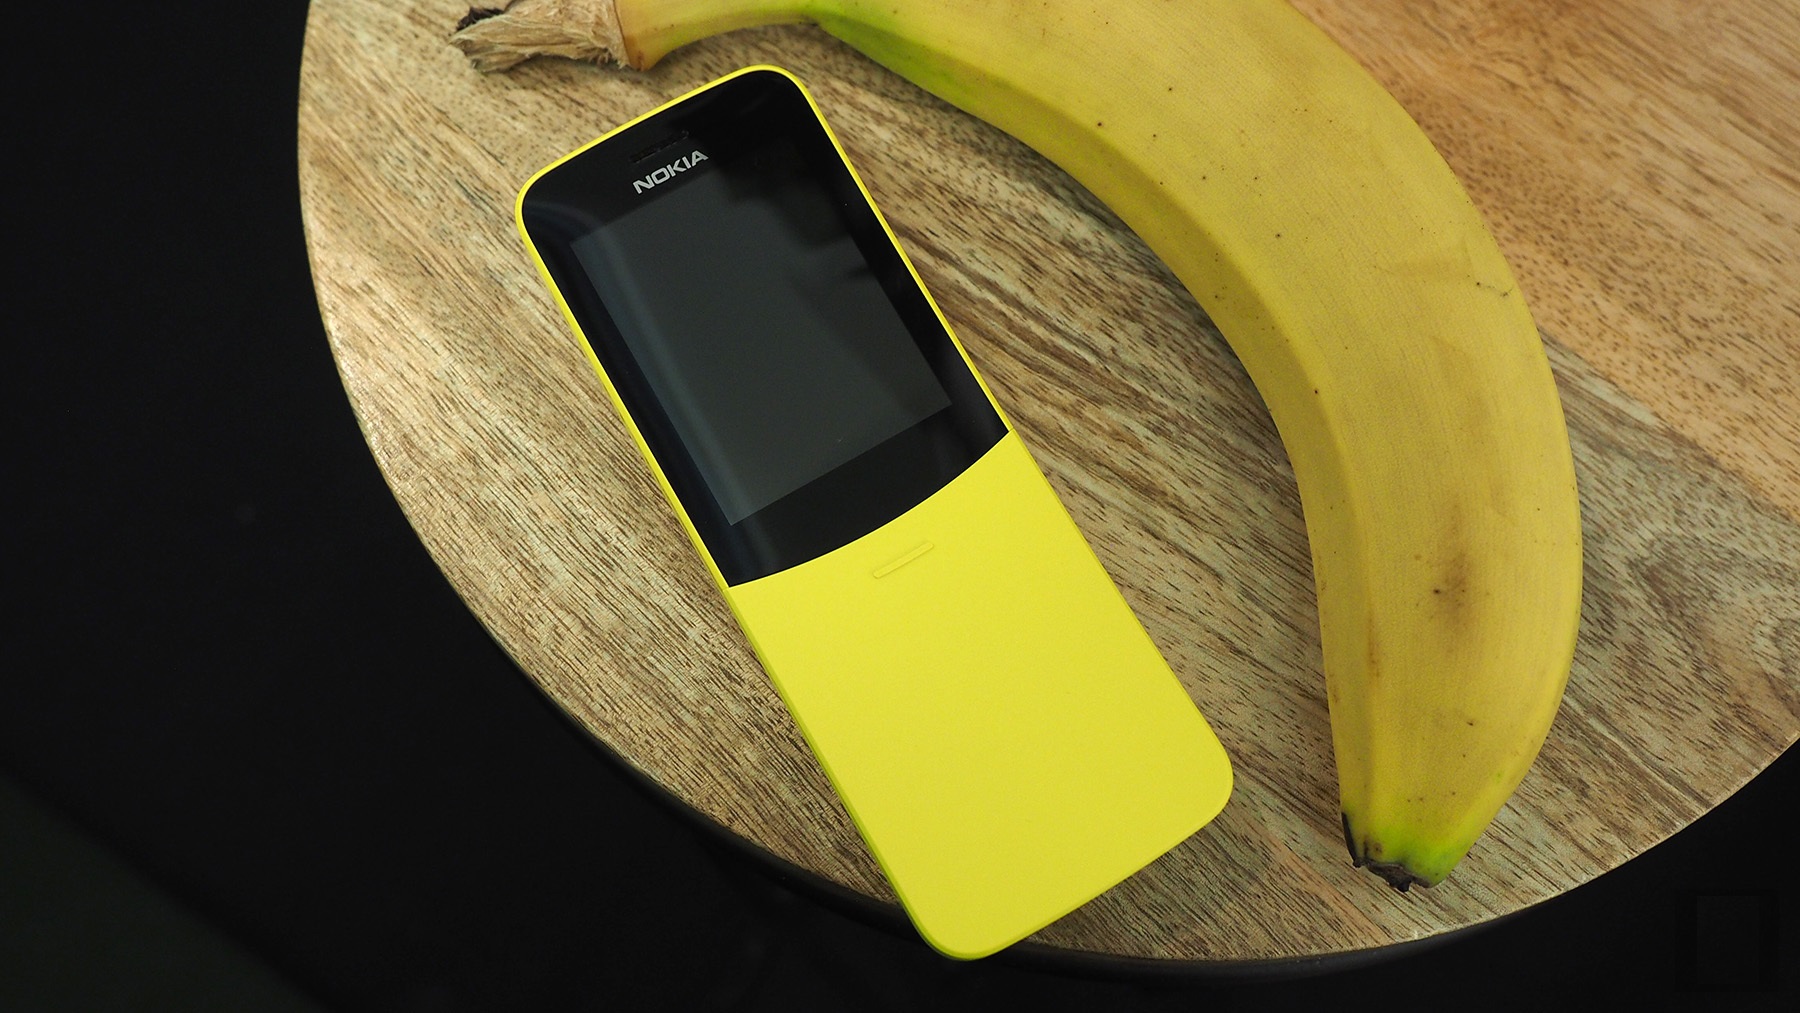 Представлен обновленный телефон Nokia 8110 с поддержкой 4G, приложений Google и социальных сетей